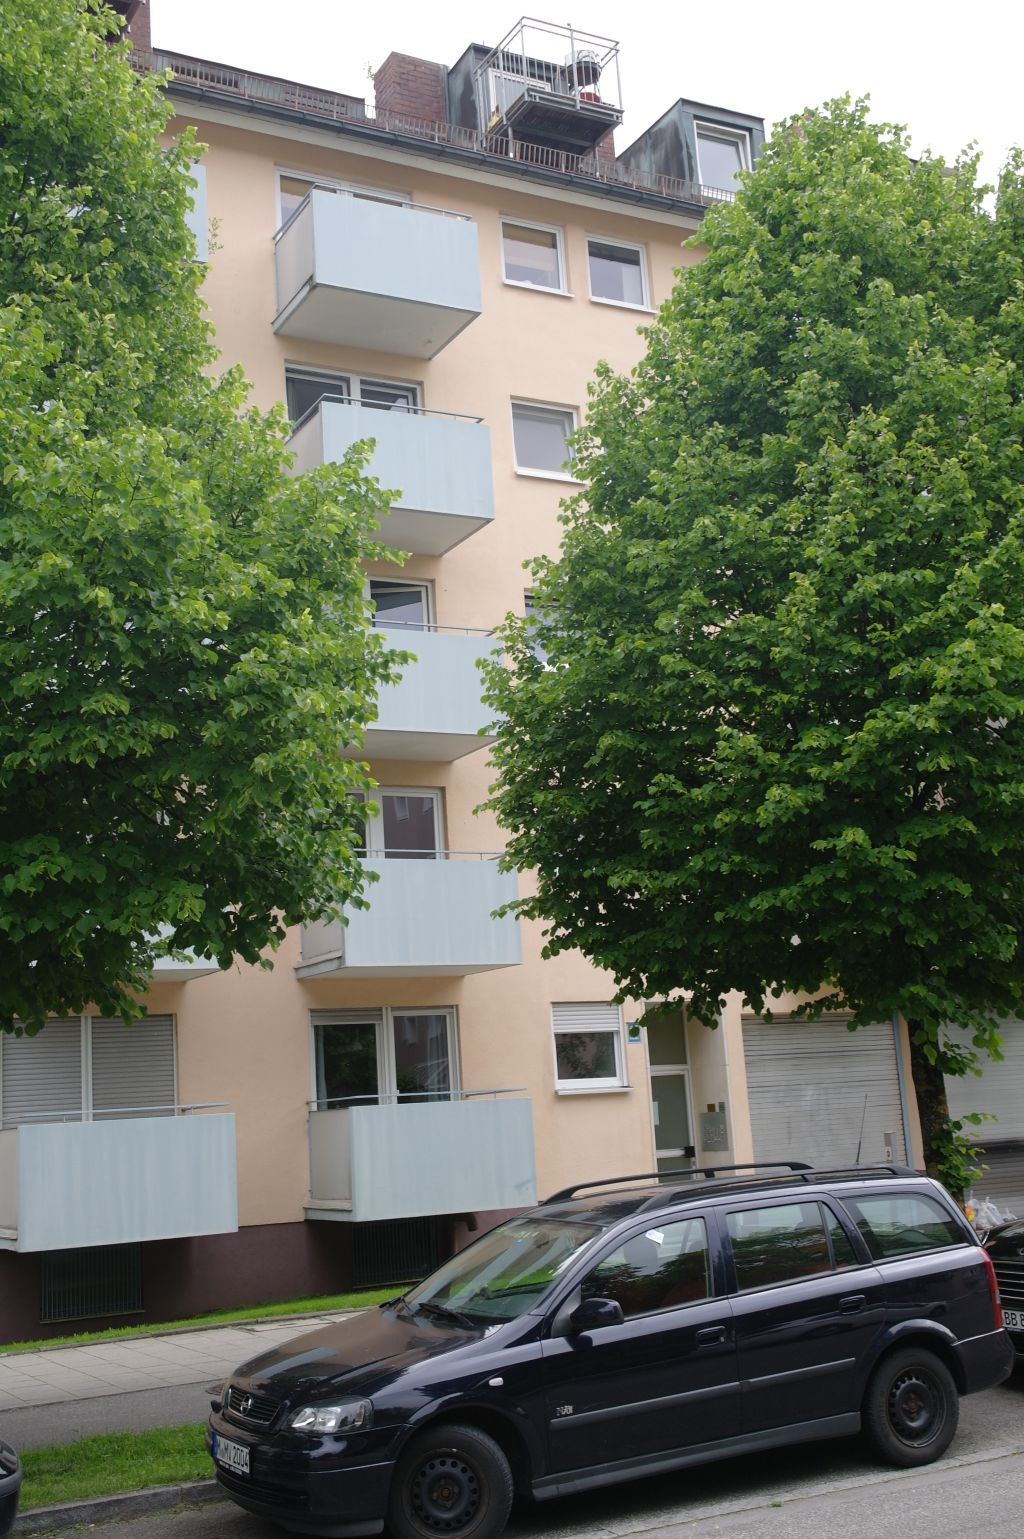 Miete 1 Zimmer Wohnung München | Ganze Wohnung | München | Schönes Ein-Zimmer Apartment in München-Untergiesing, EG, 06 | Hominext